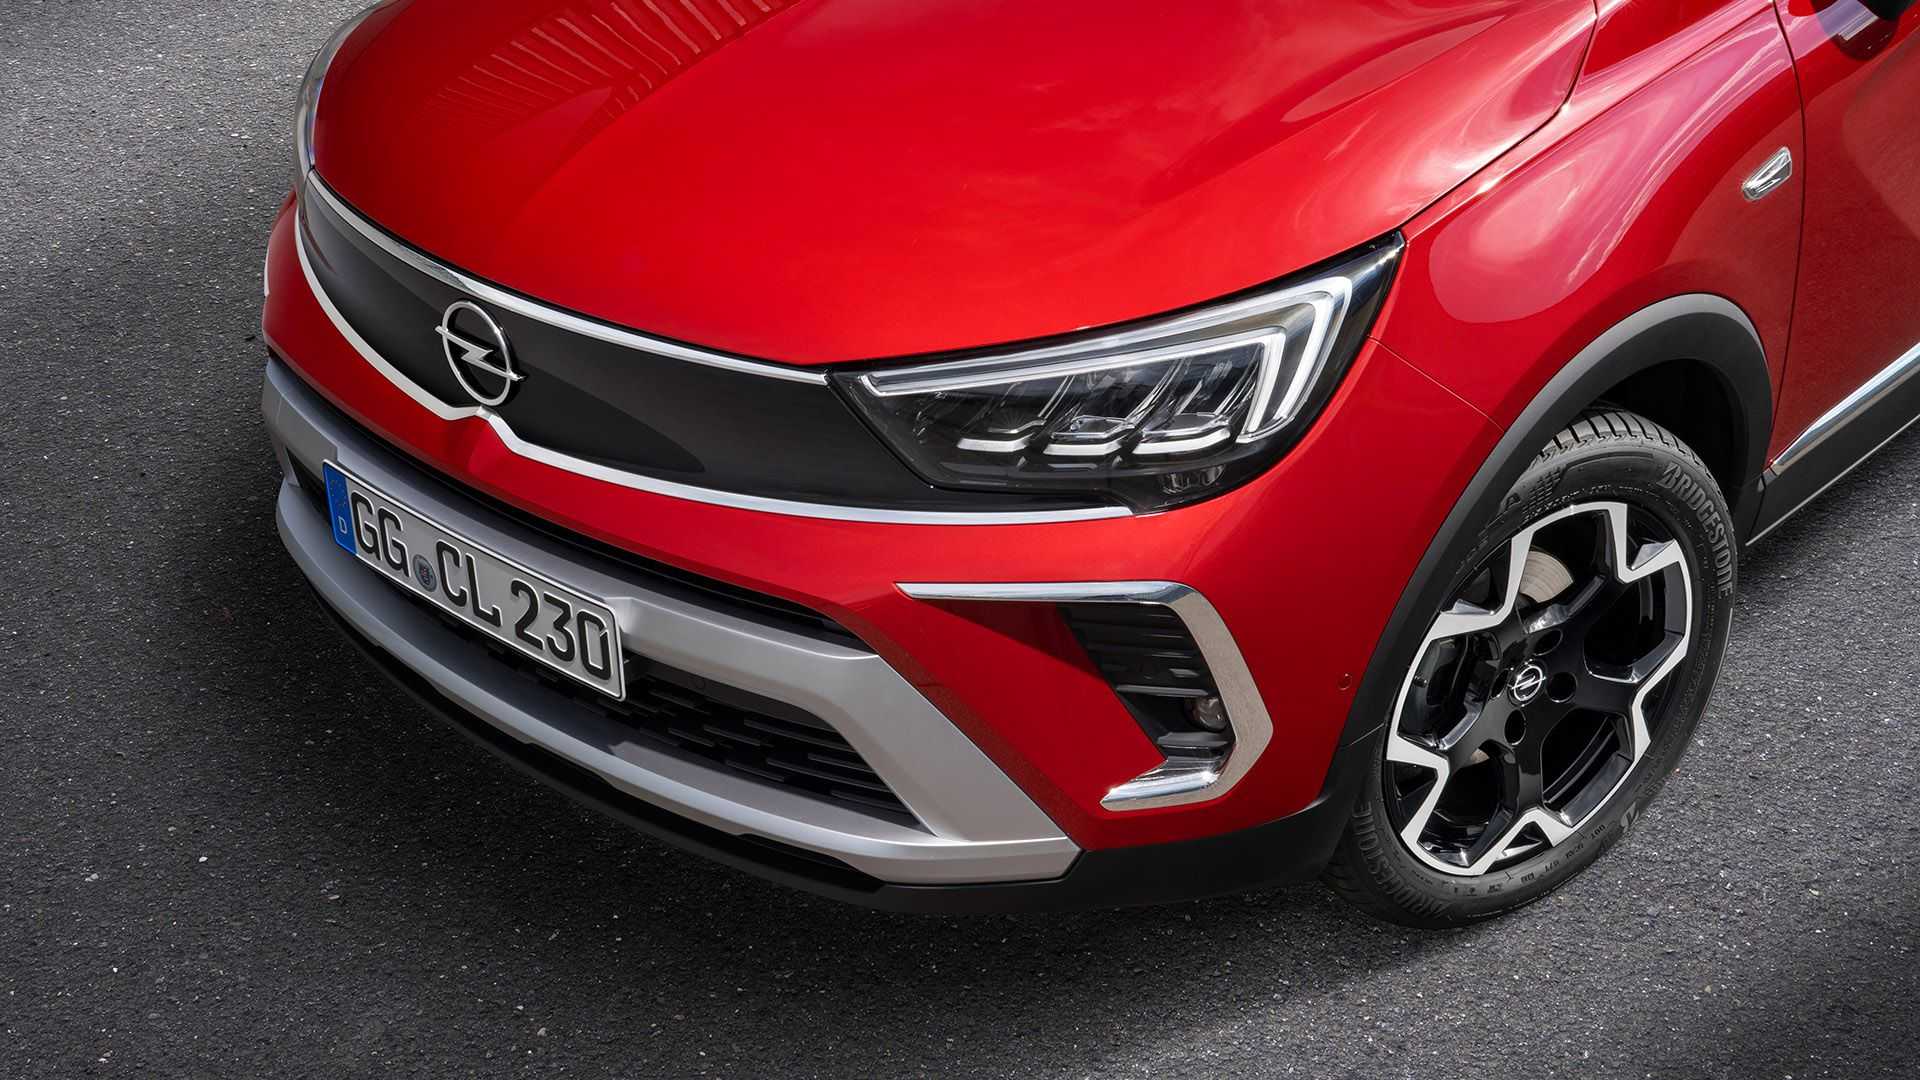 Makyajlı 2021 Opel Crossland tanıtıldı: İşte tasarımı ve özellikleri